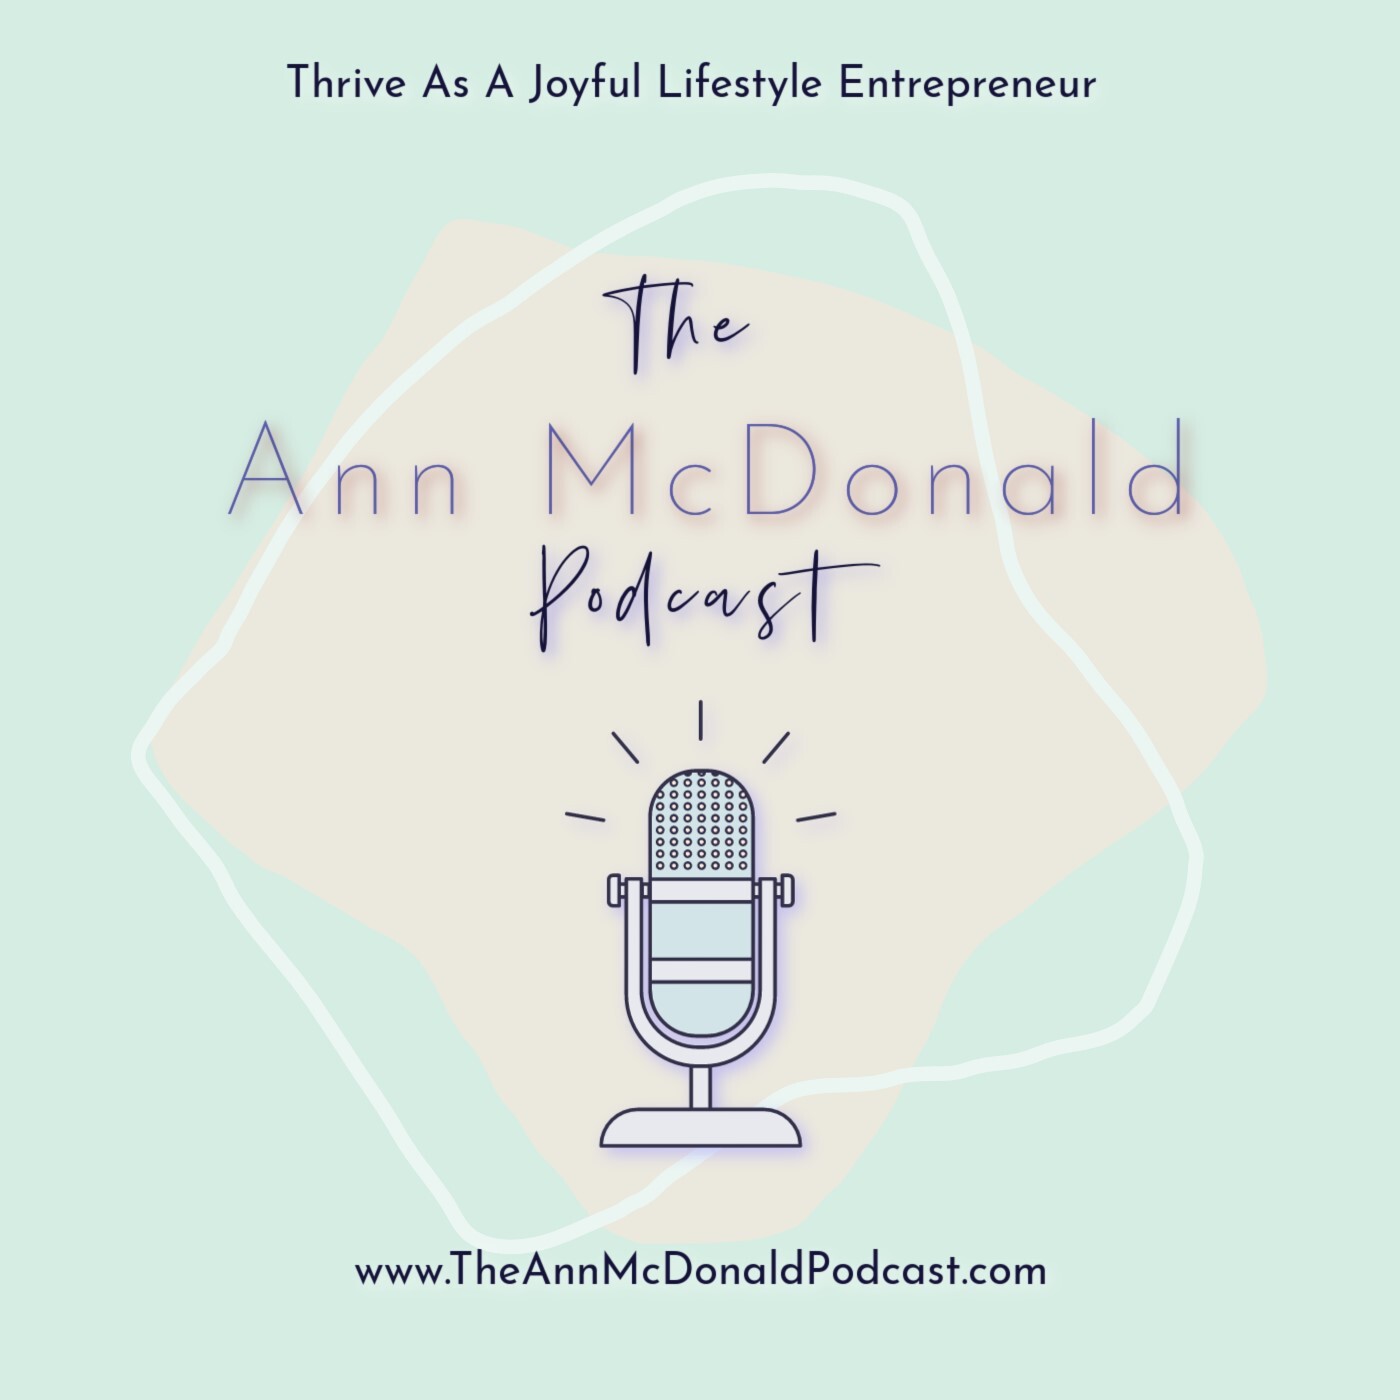 The Ann McDonald Podcast